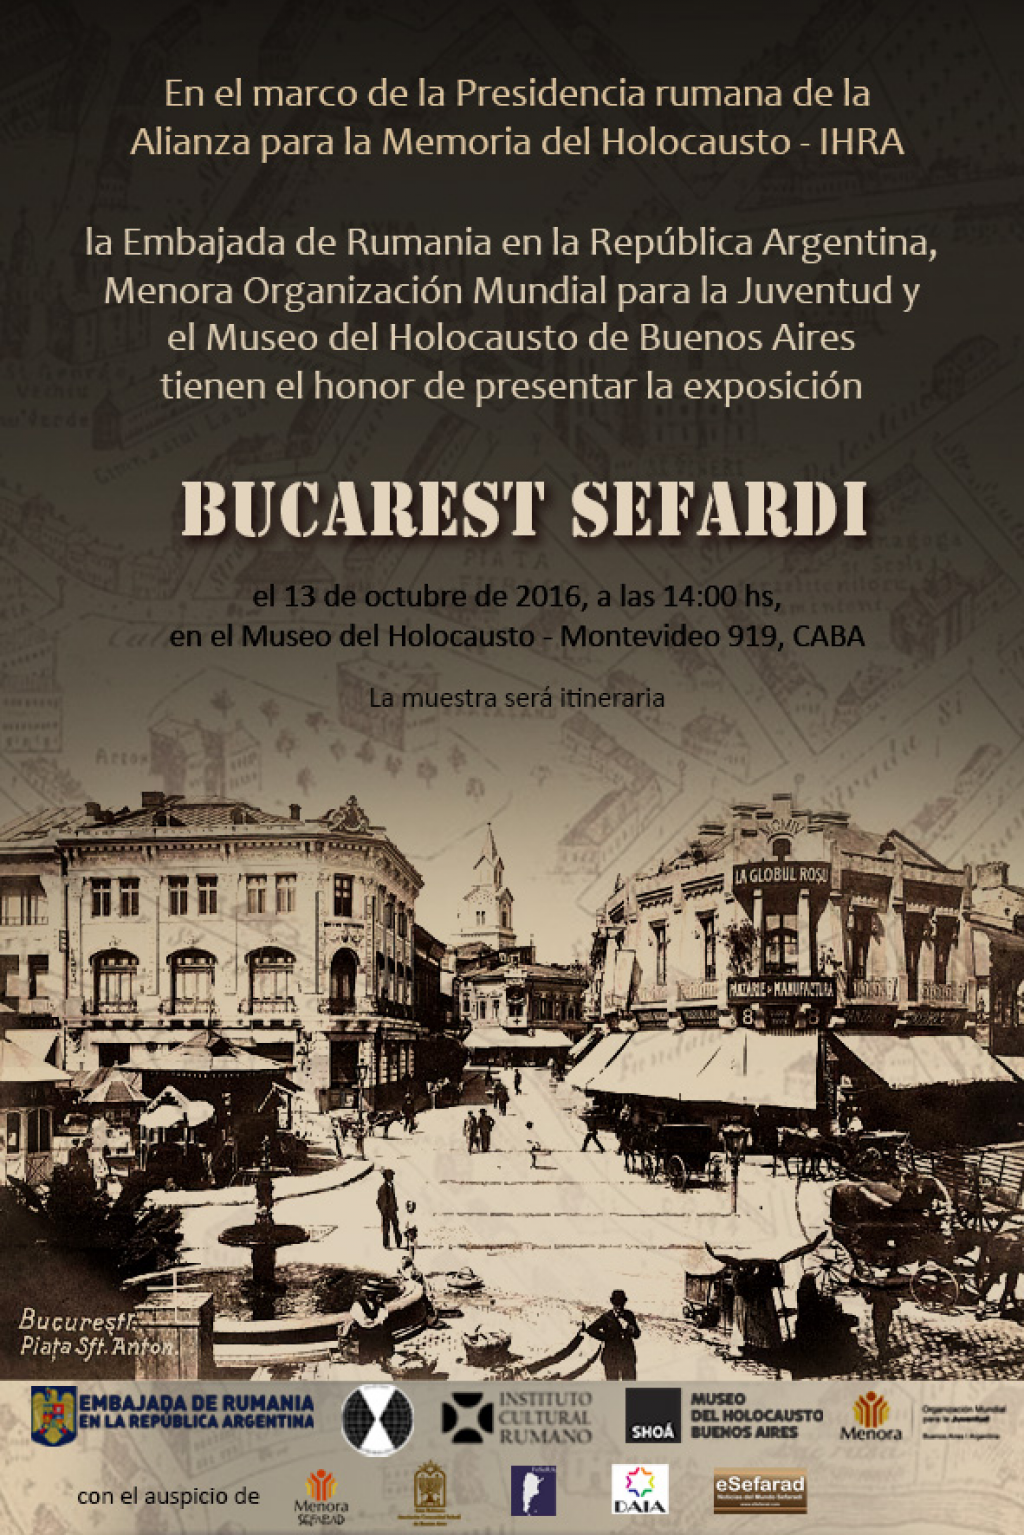 Buenos Aires Evenimente cu ocazia Presedintiei romanesti a Aliantei Internationale pentru Memoria Holocaustului - IHRA 